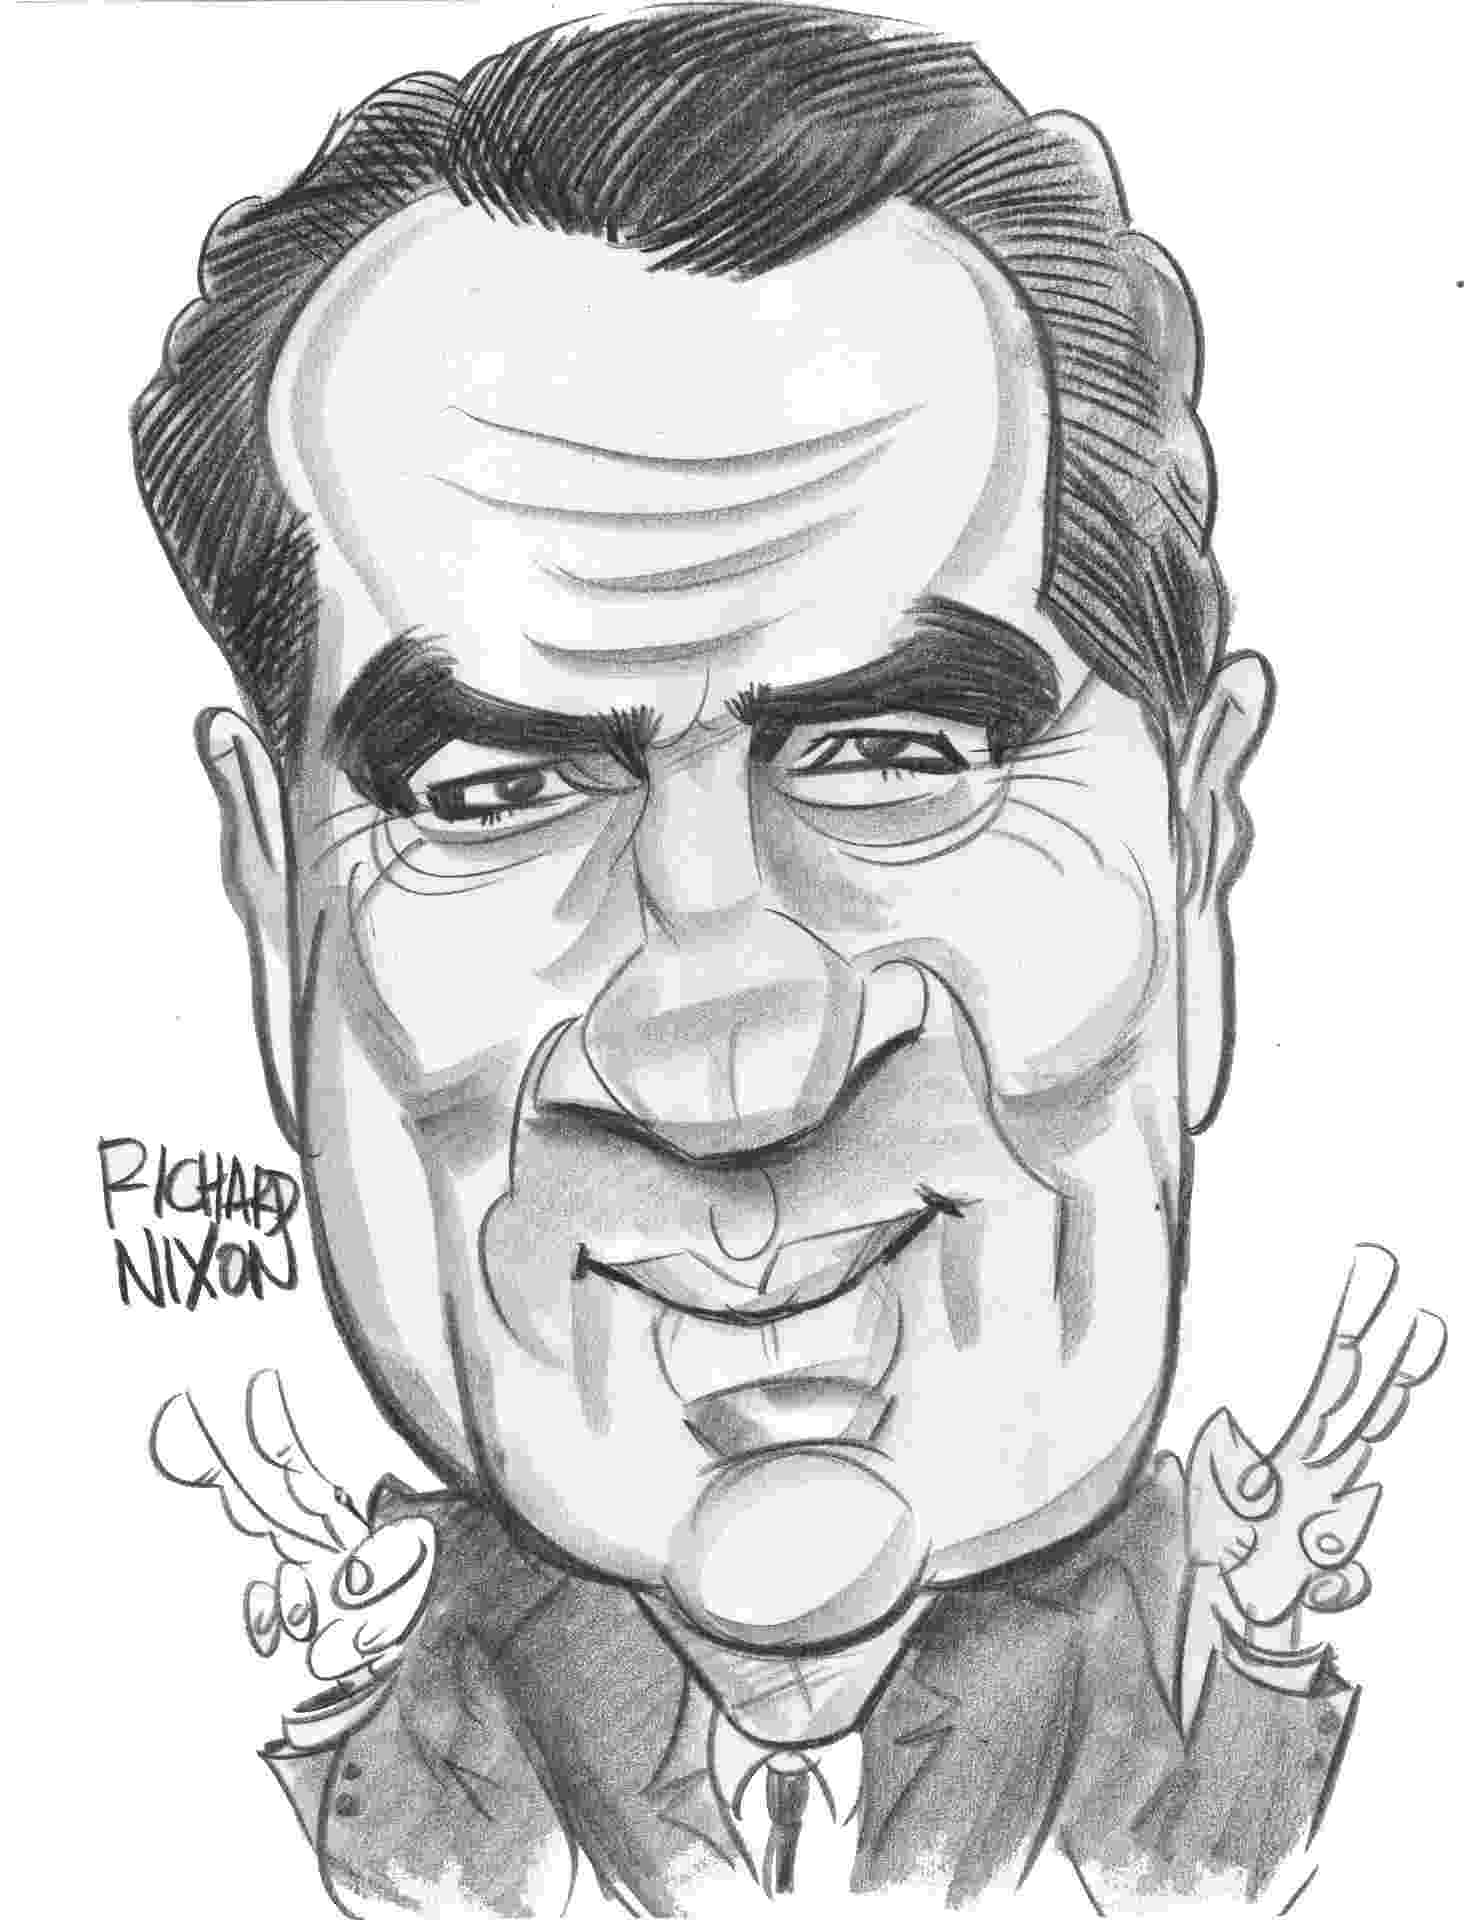 richard nixon caricature richard nixon illustration celebrity caricatures richard caricature nixon 